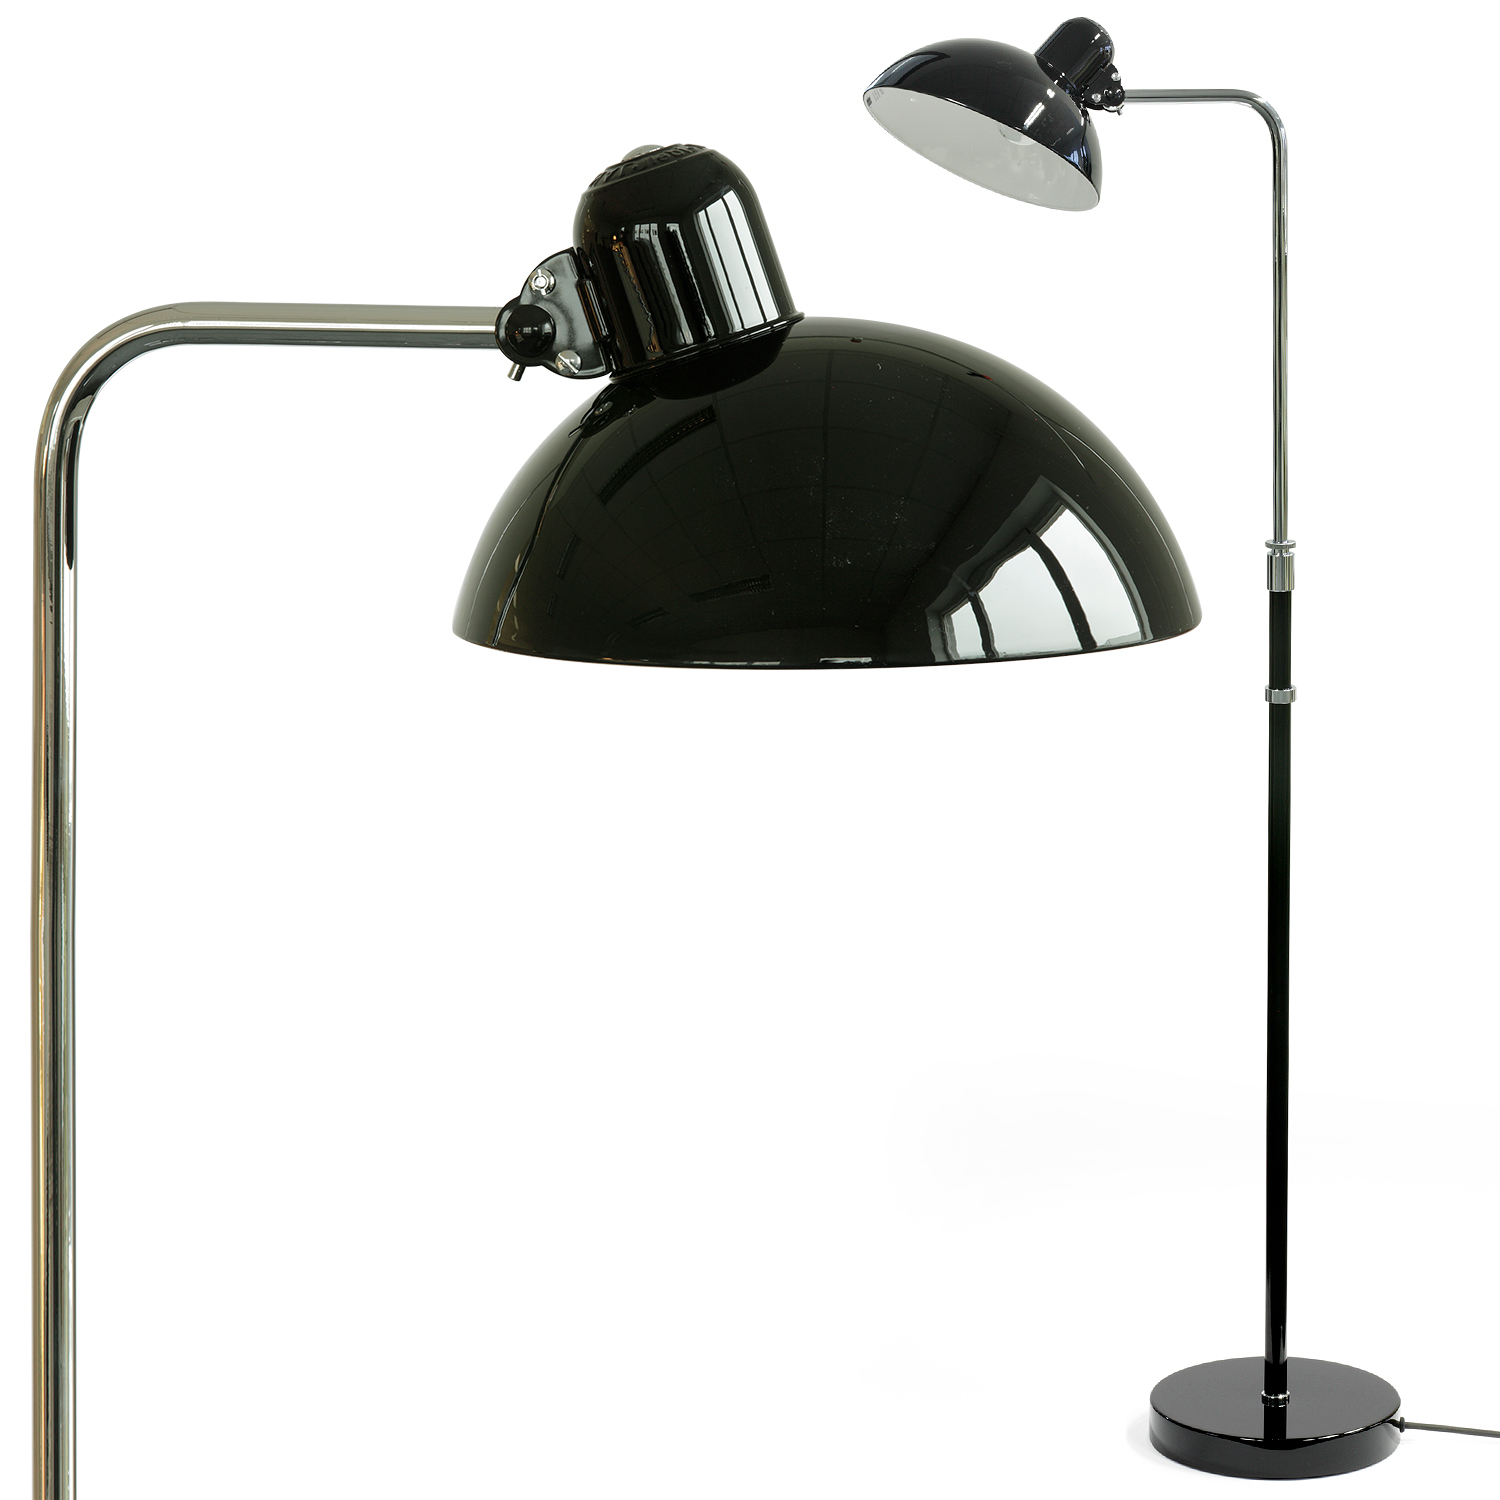 Originale Bauhaus-Stehlampe 6580-F von Christian Dell in schwarz